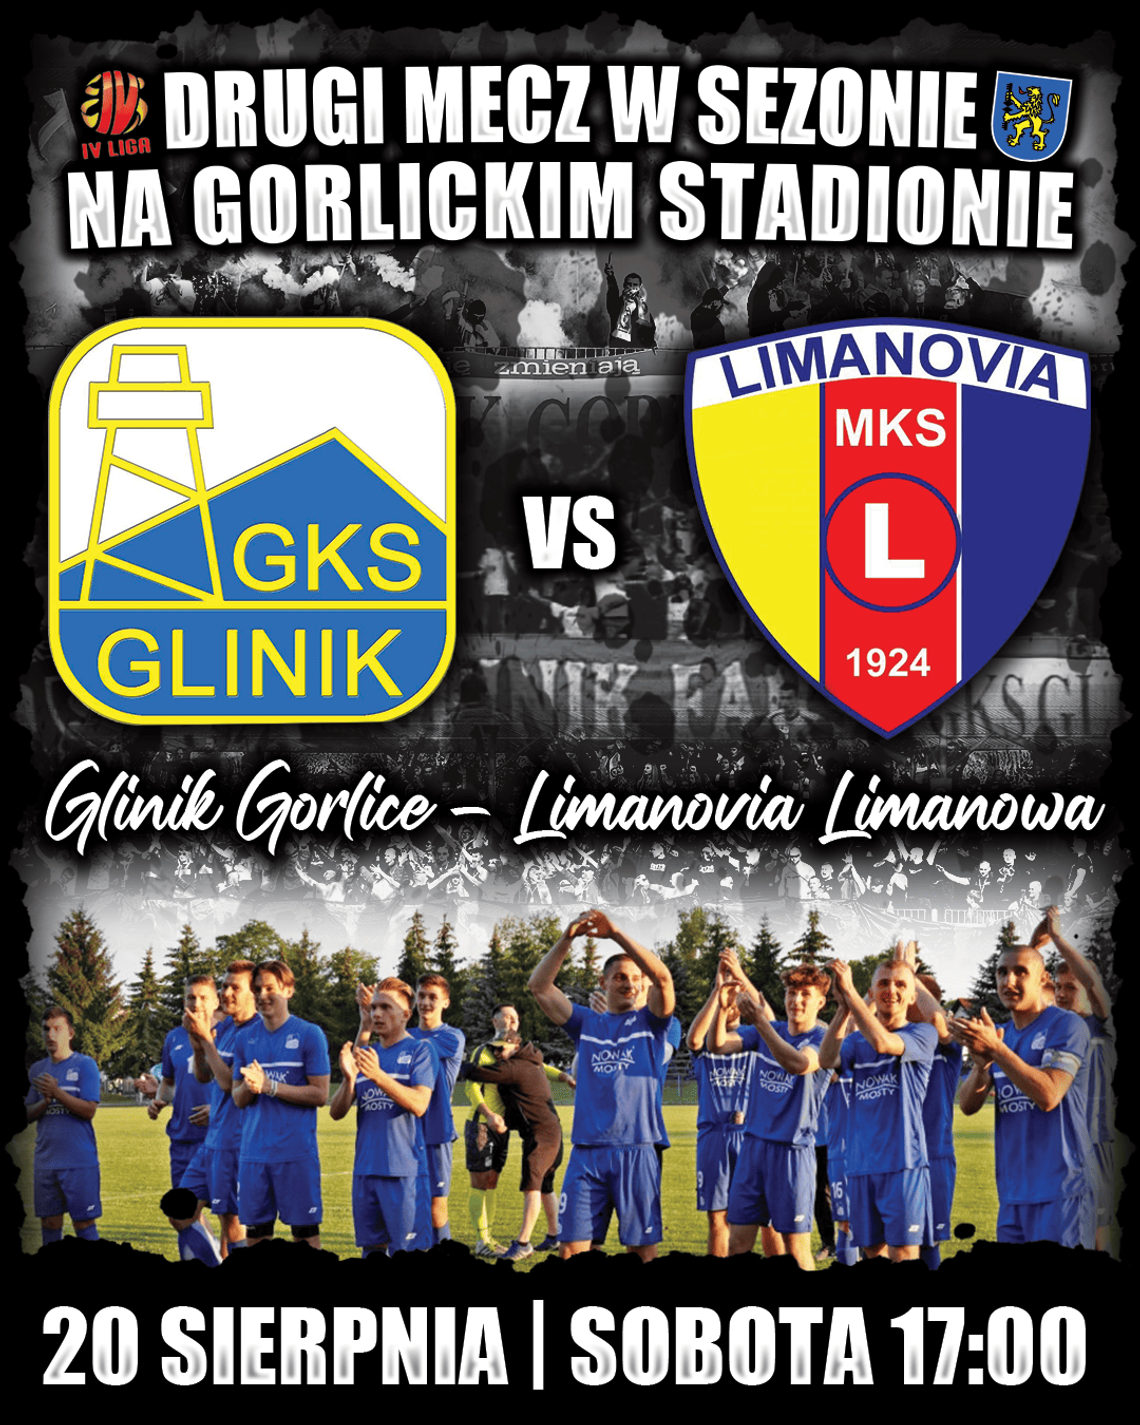 GKS Glinik Gorlice vs Limanovia Limanowa | halogorlice.info